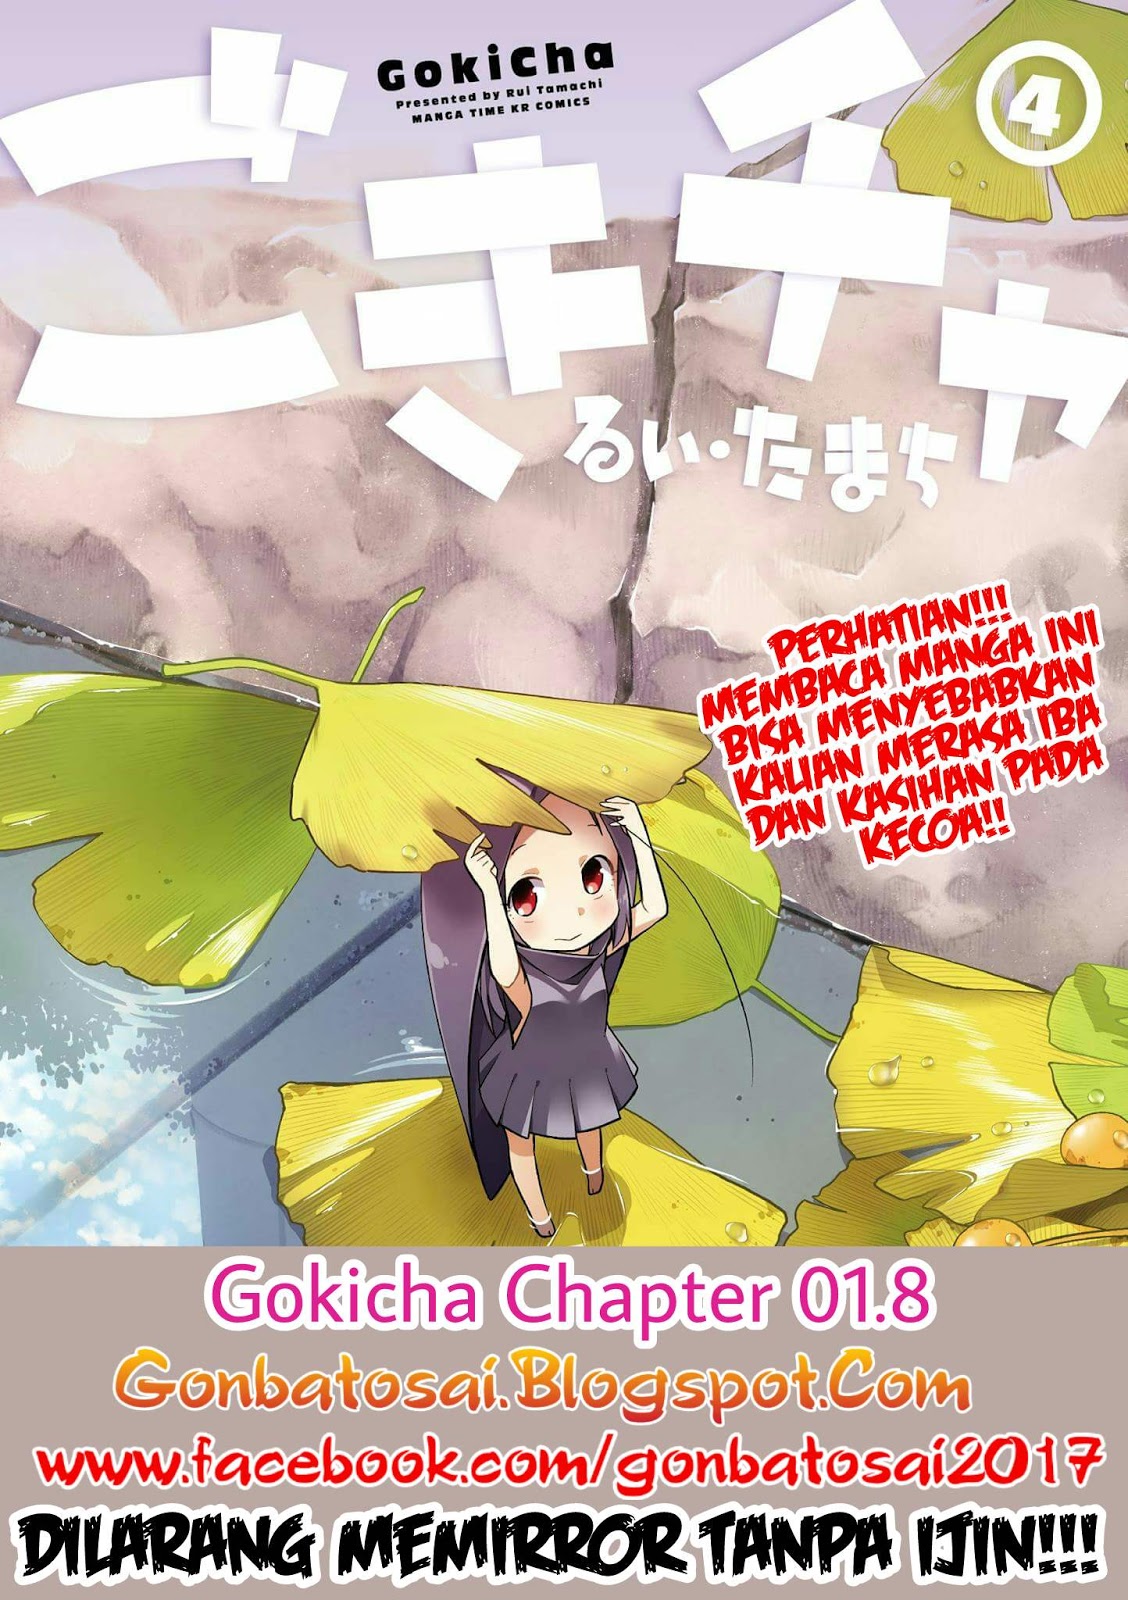 Gokicha Chapter 01.8